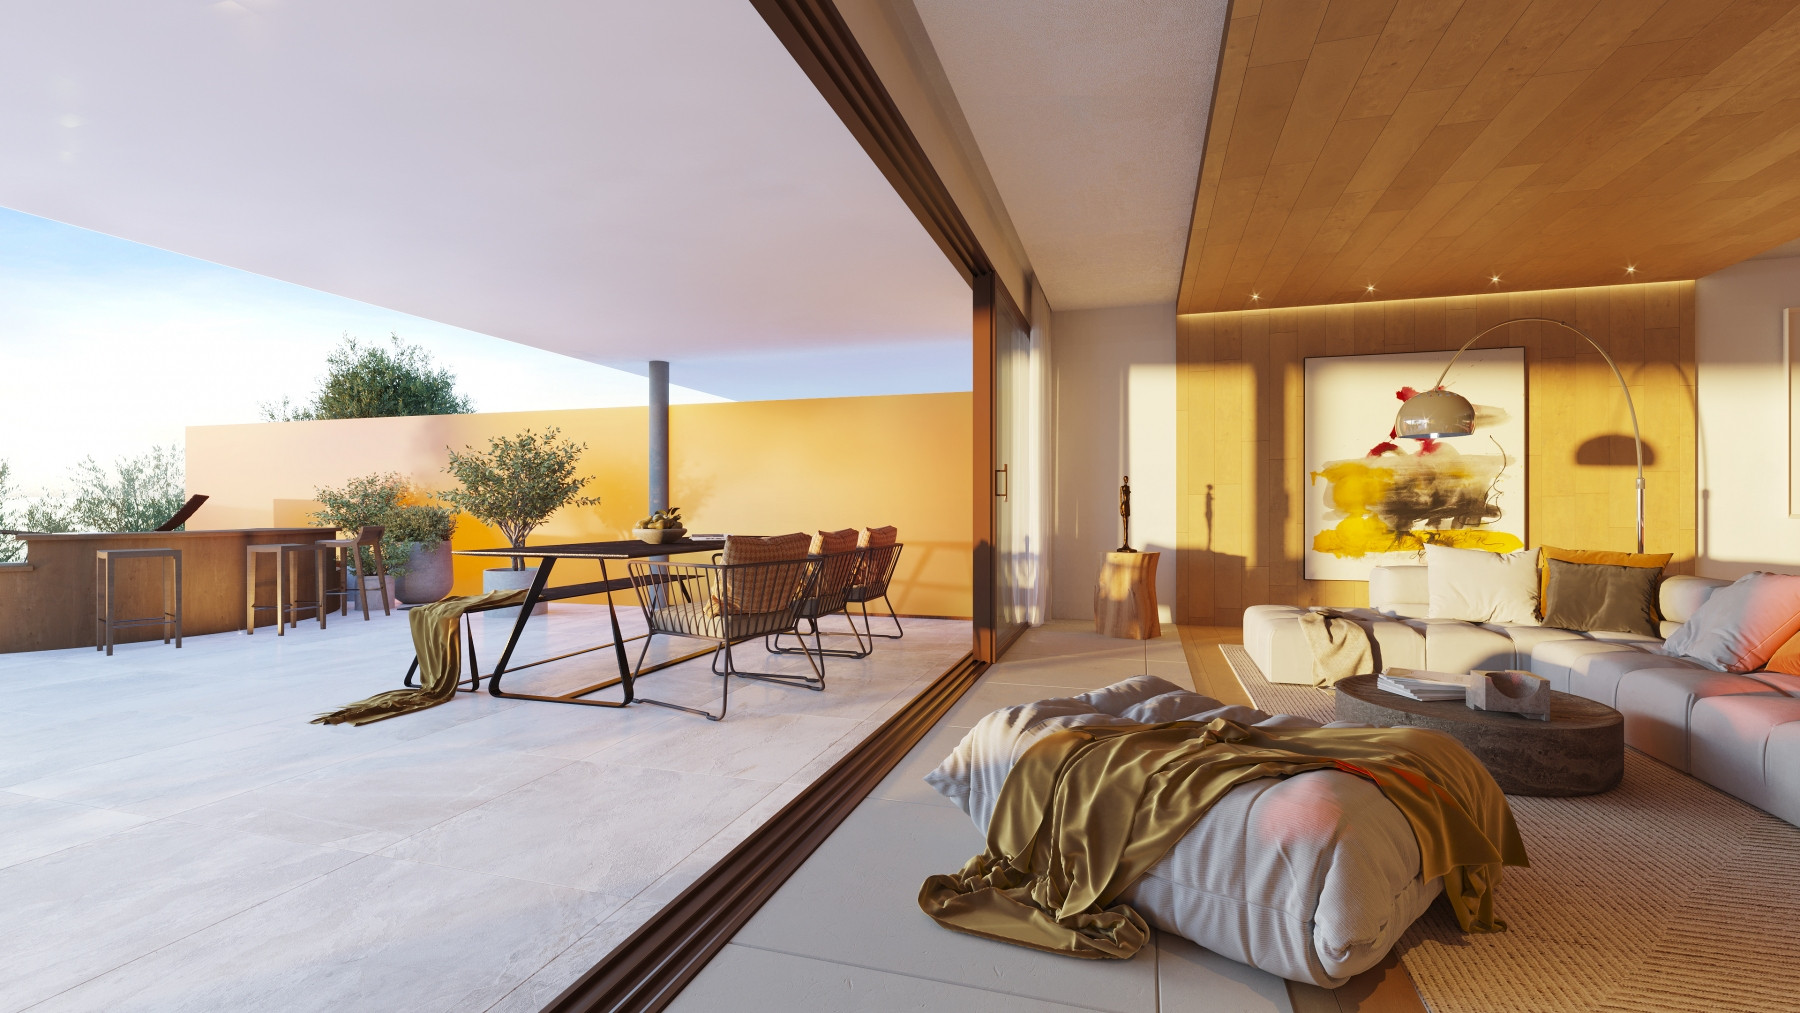 Luxury three bedroom villa with sea views in El Higueron, Fuengirola. | Image 2